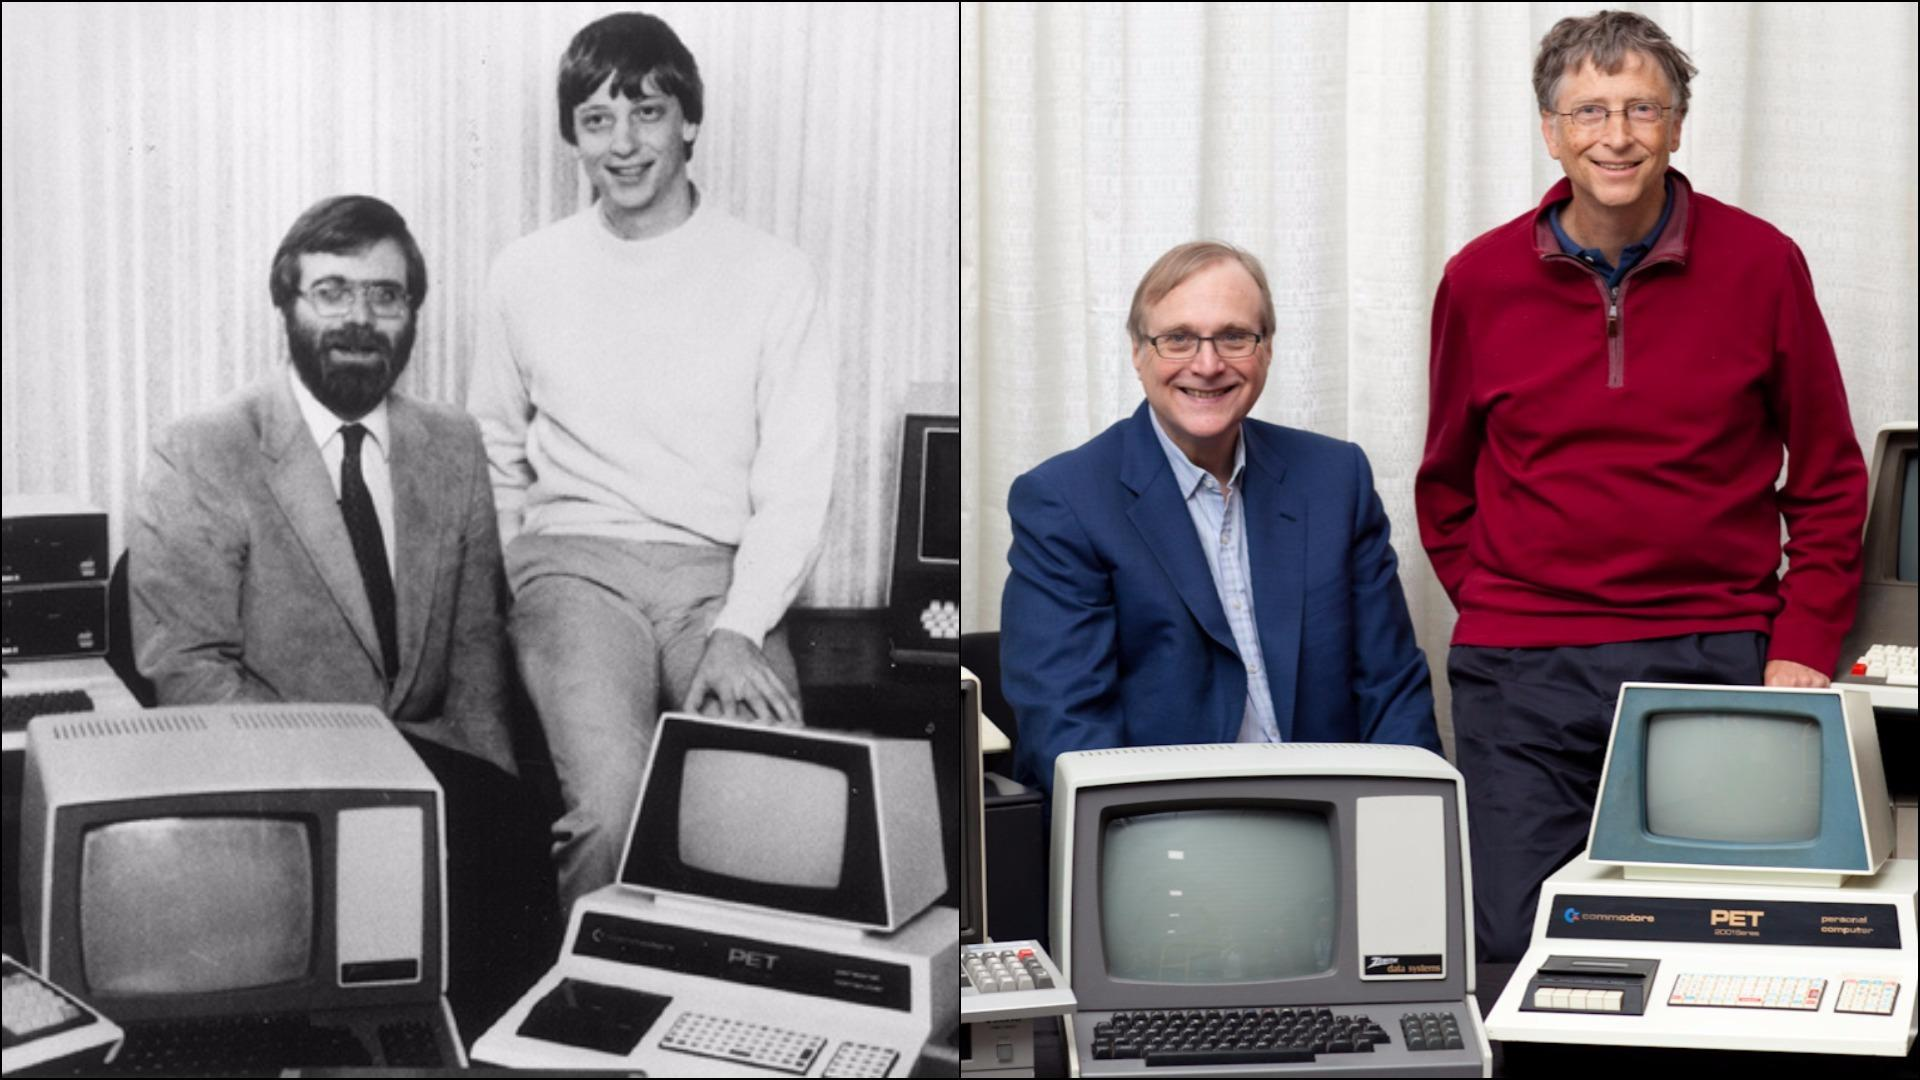 O Bill Gates μαζί με τον Paul Allen, τότε και τώρα